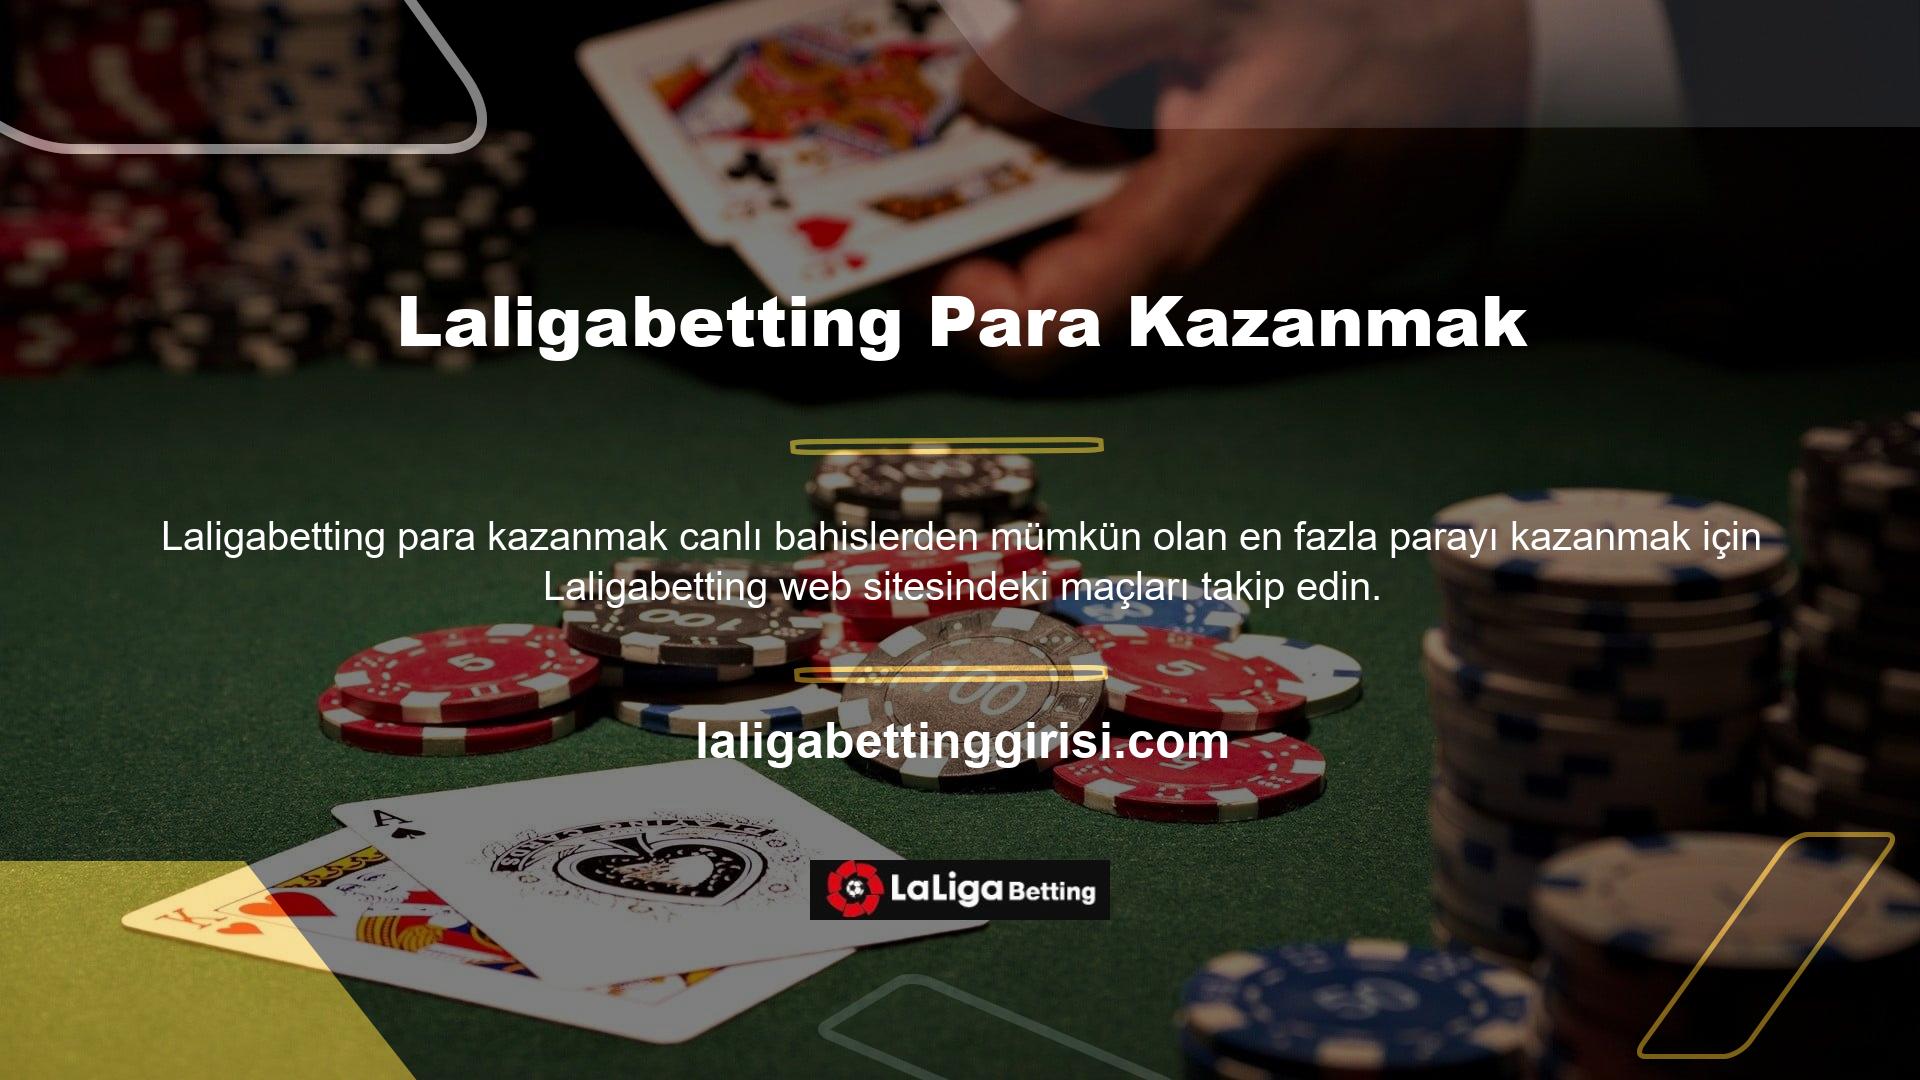 Canlı casino oyunları ve bahisler Laligabetting sitesinde para kazanmanın en mantıklı yoludur